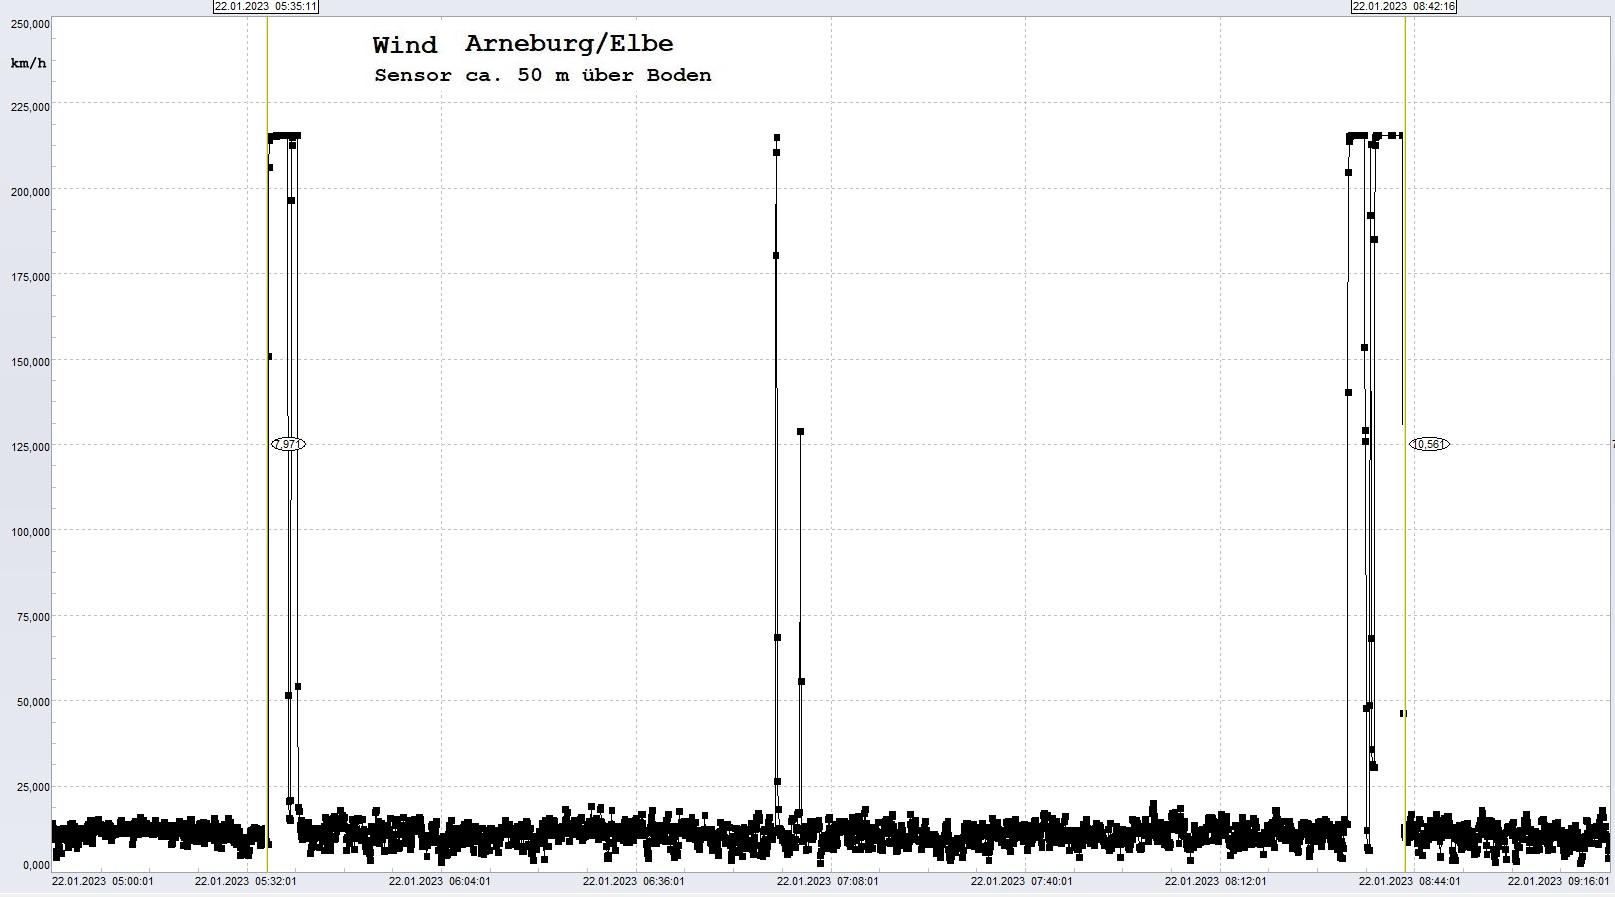 Arneburg: Signalstörung, 22.01.2023, ab ca. 05:35 Uhr
  Sensor setzt immer wieder mit MAX-Wert aus